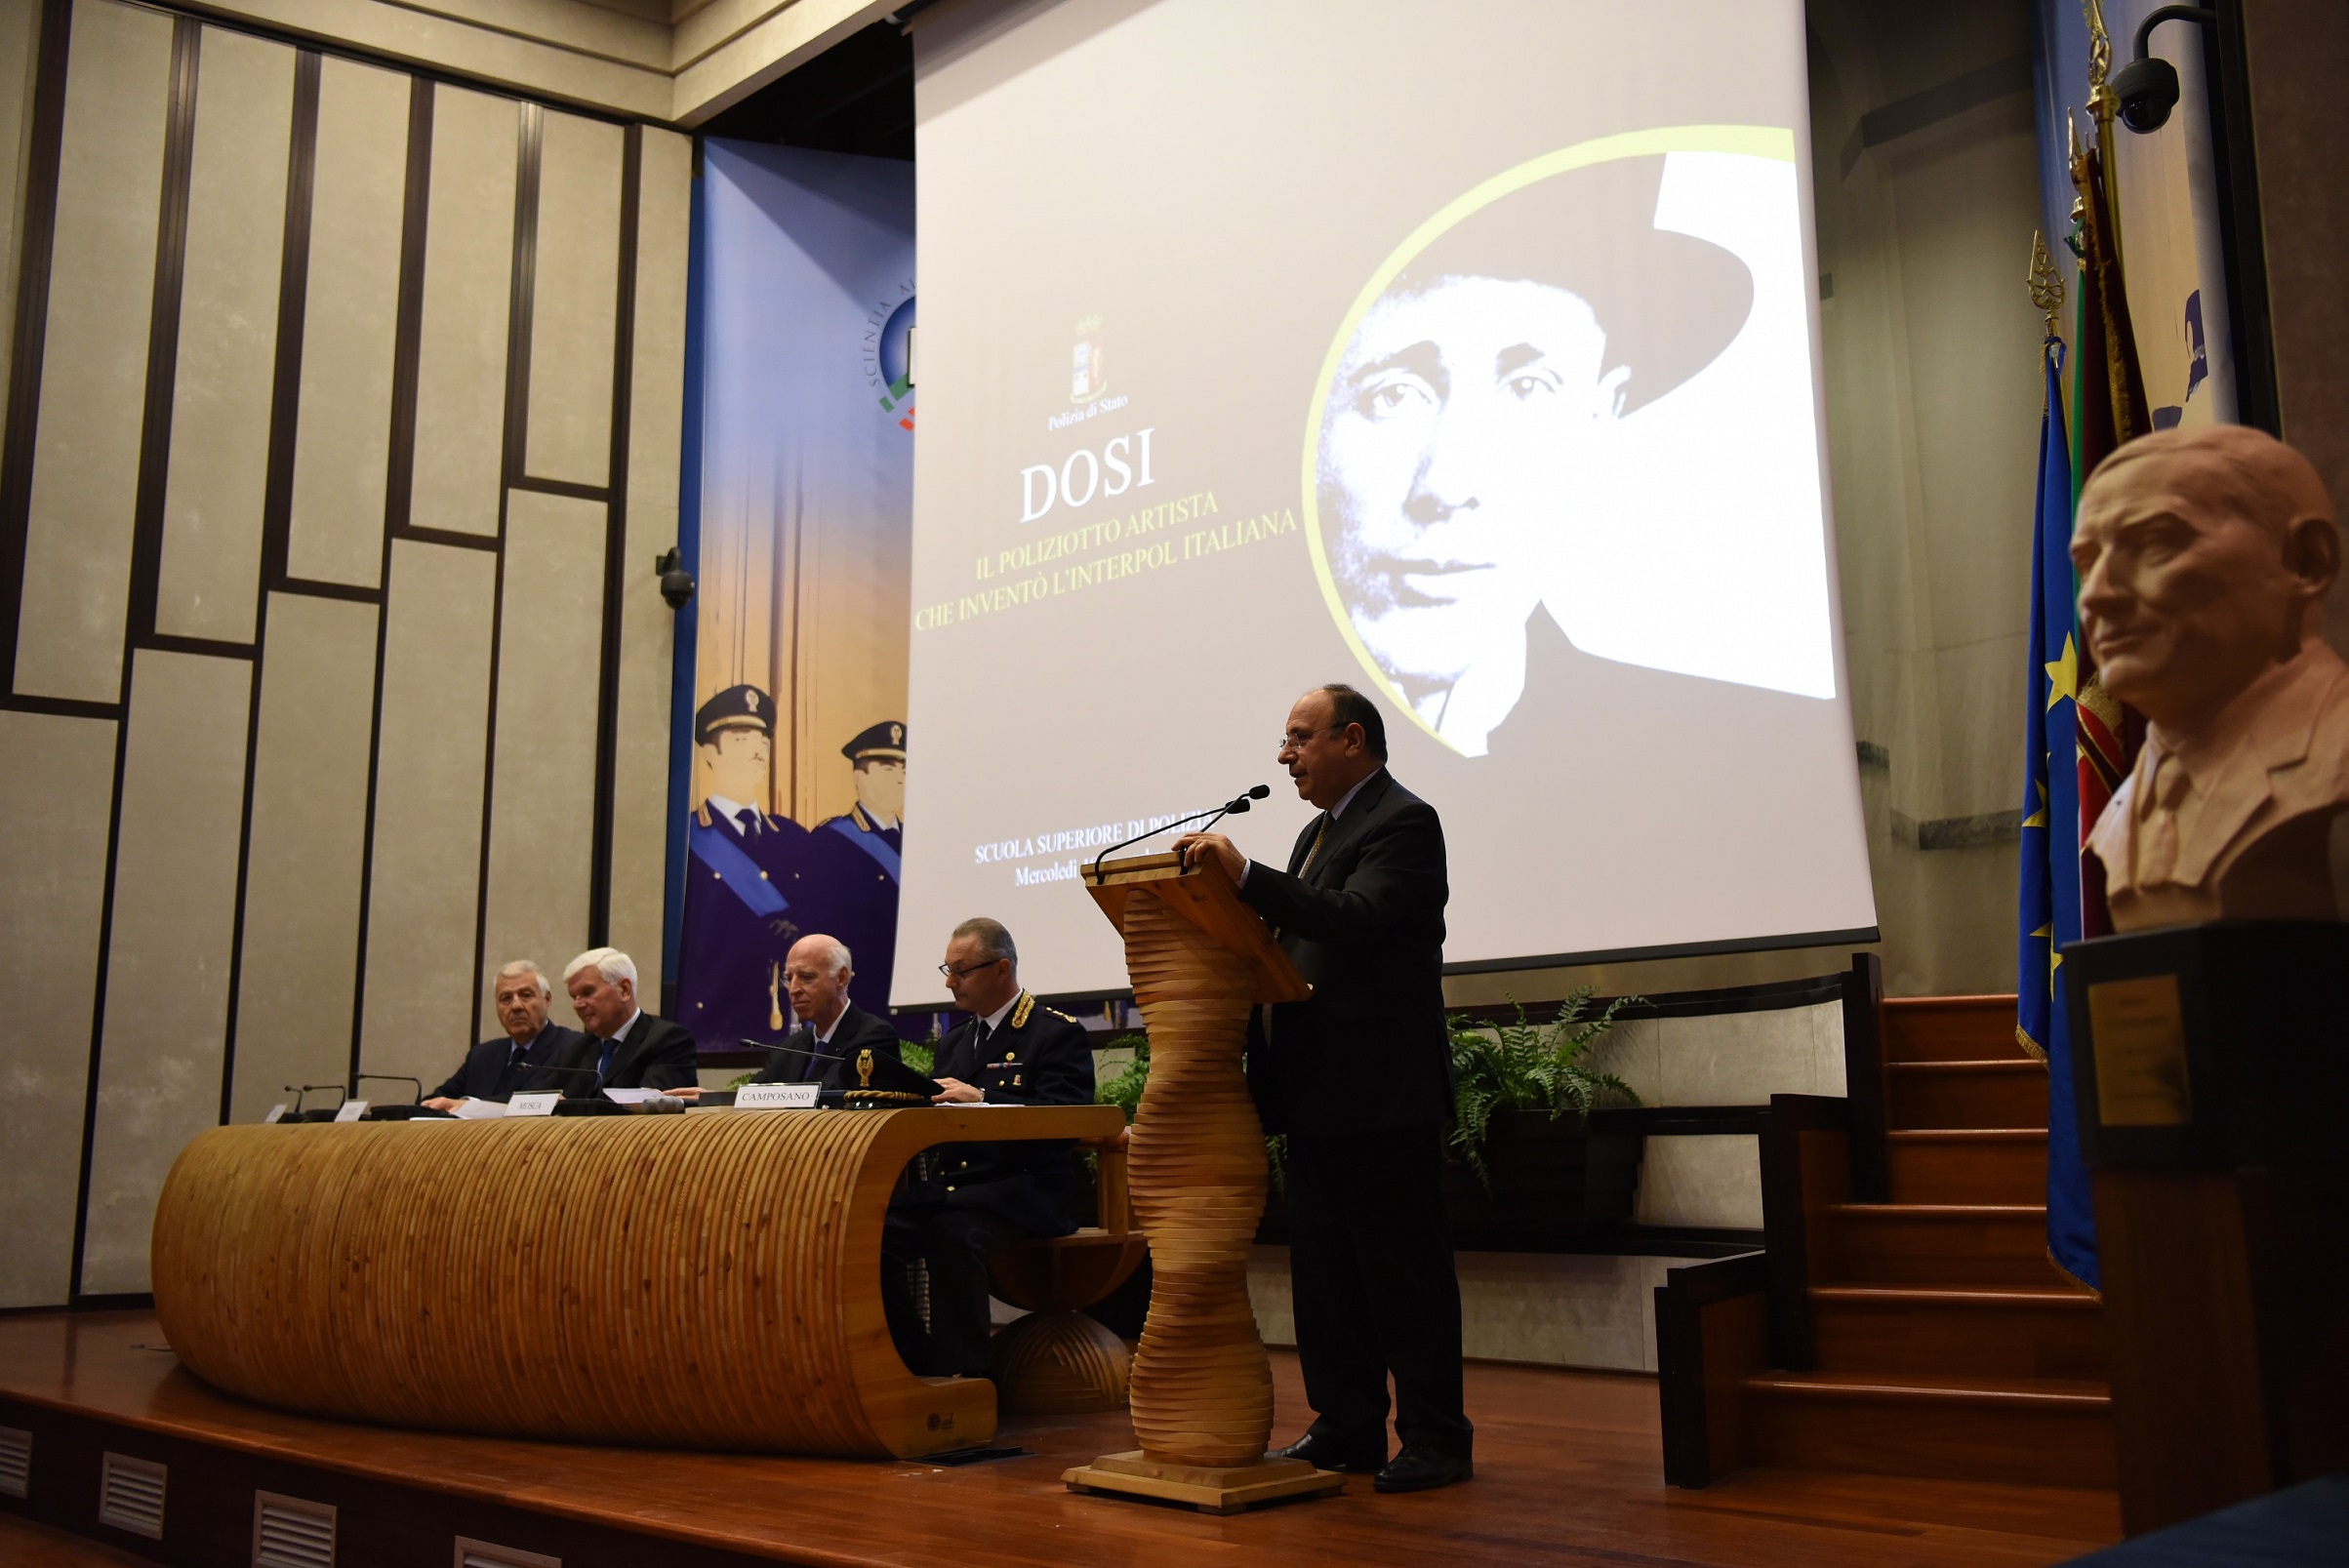 Enzo Calabria Direttore dell'Istituto Superiore di Poliza presenta l'iniziativa del libro su Dosi